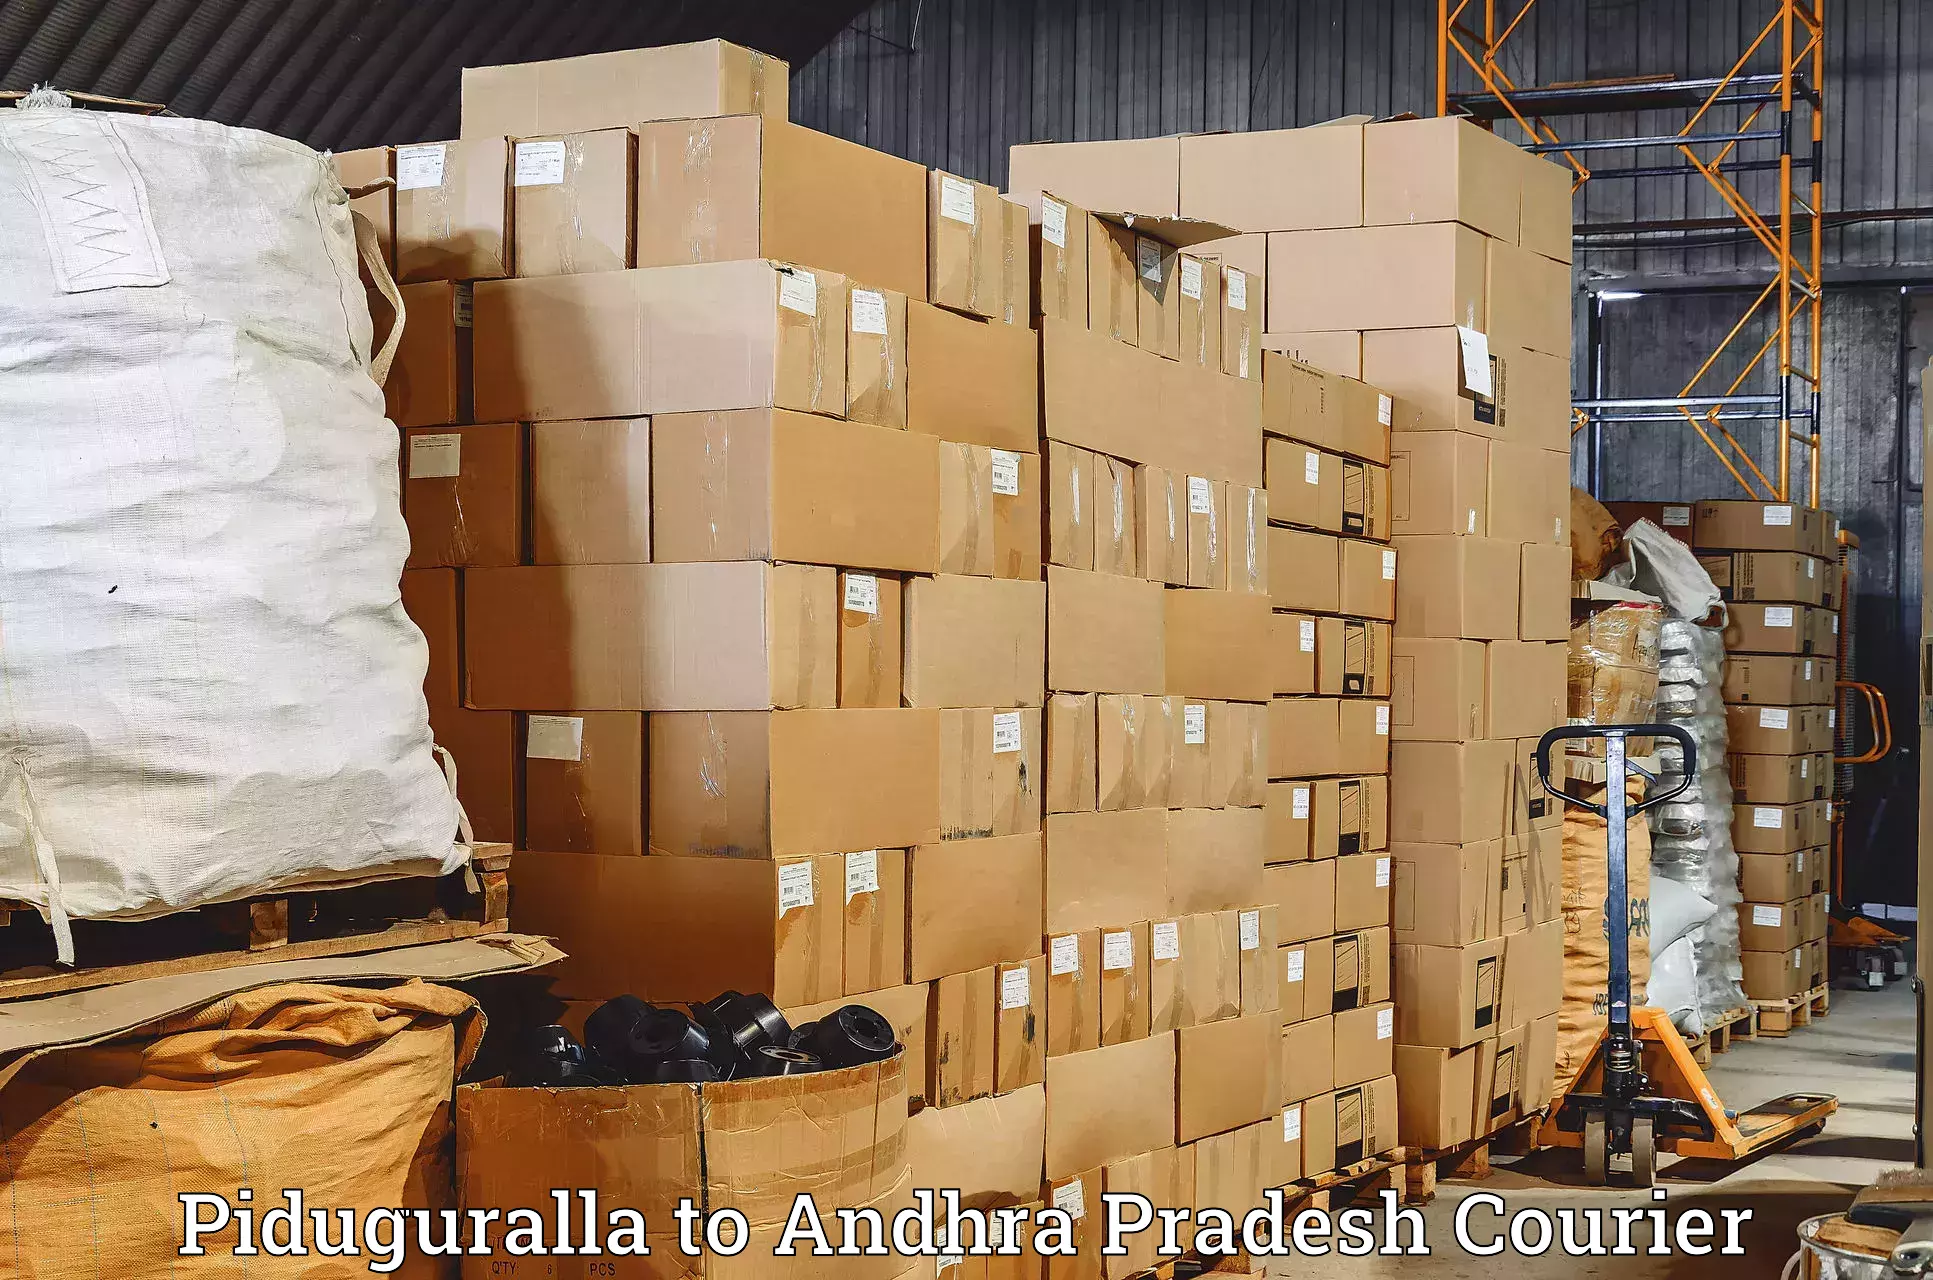 Global shipping networks Piduguralla to Udayagiri